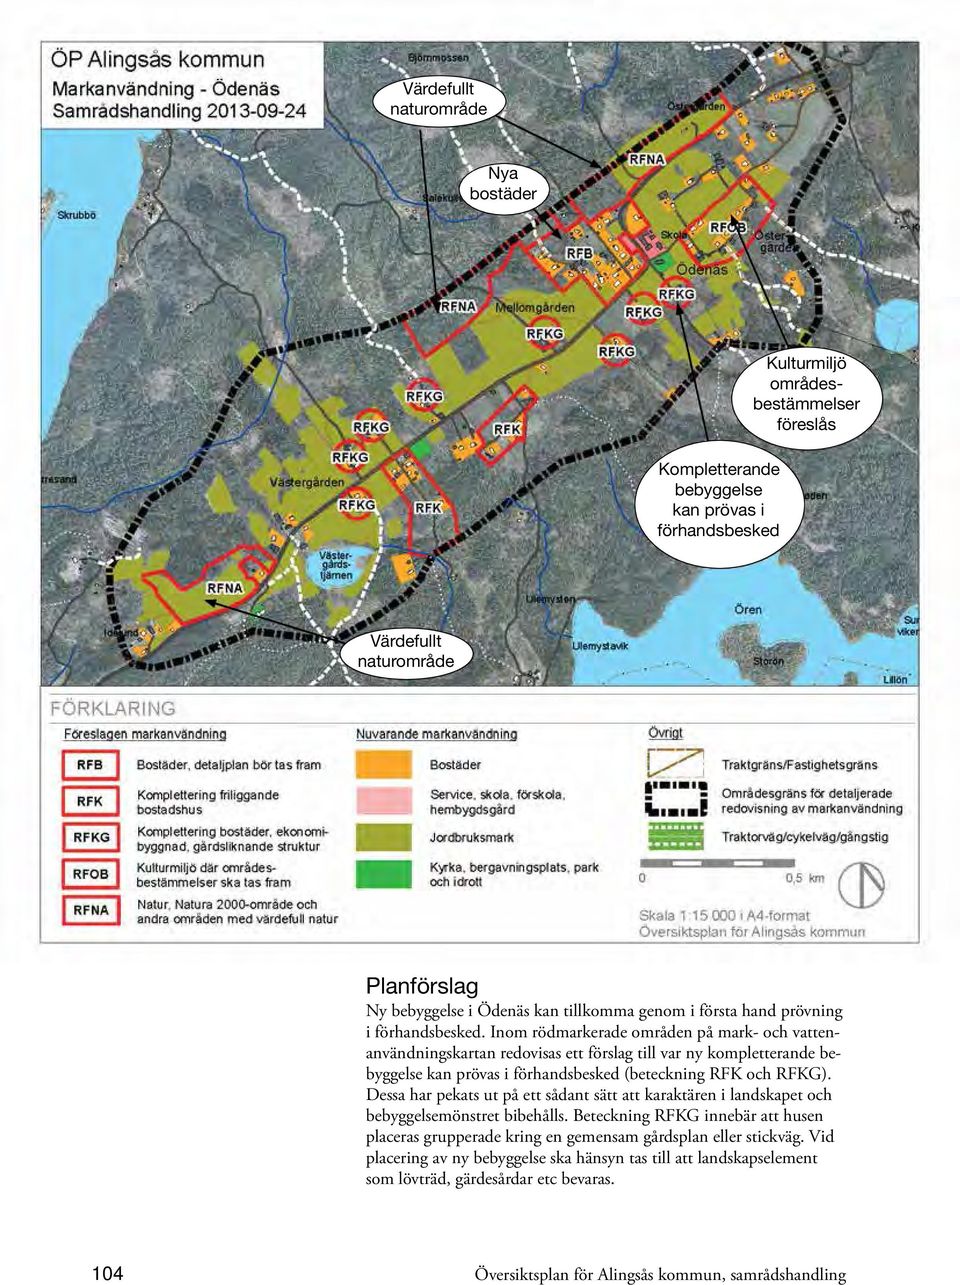 Inom rödmarkerade områden på mark- och vattenanvändningskartan redovisas ett förslag till var ny kompletterande bebyggelse kan prövas i förhandsbesked (beteckning RFK och RFKG).